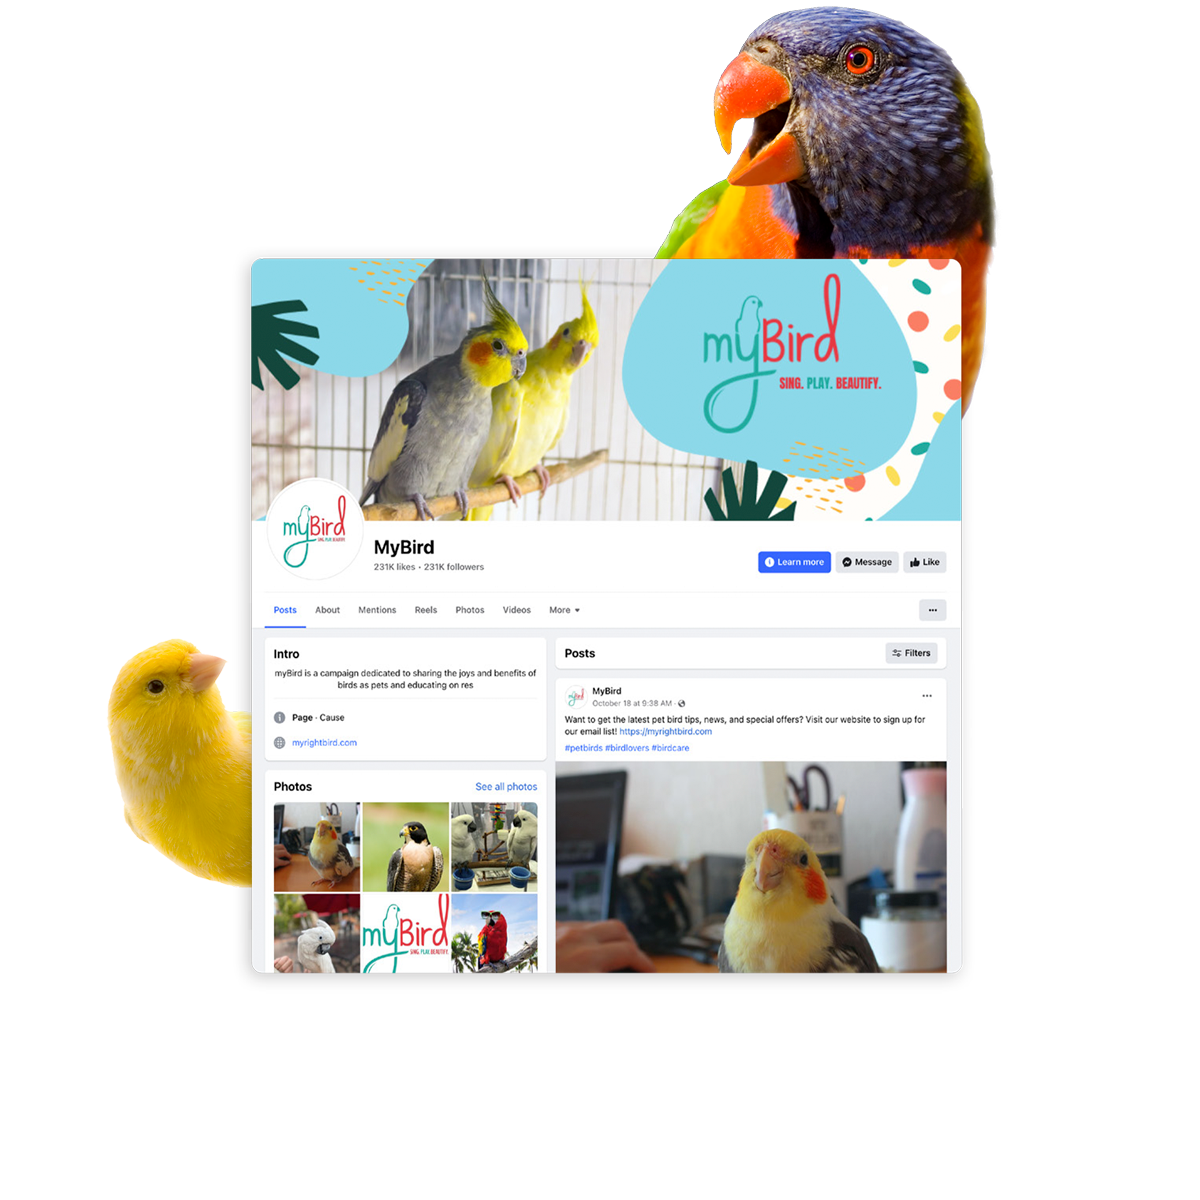 The myBird Facebook page